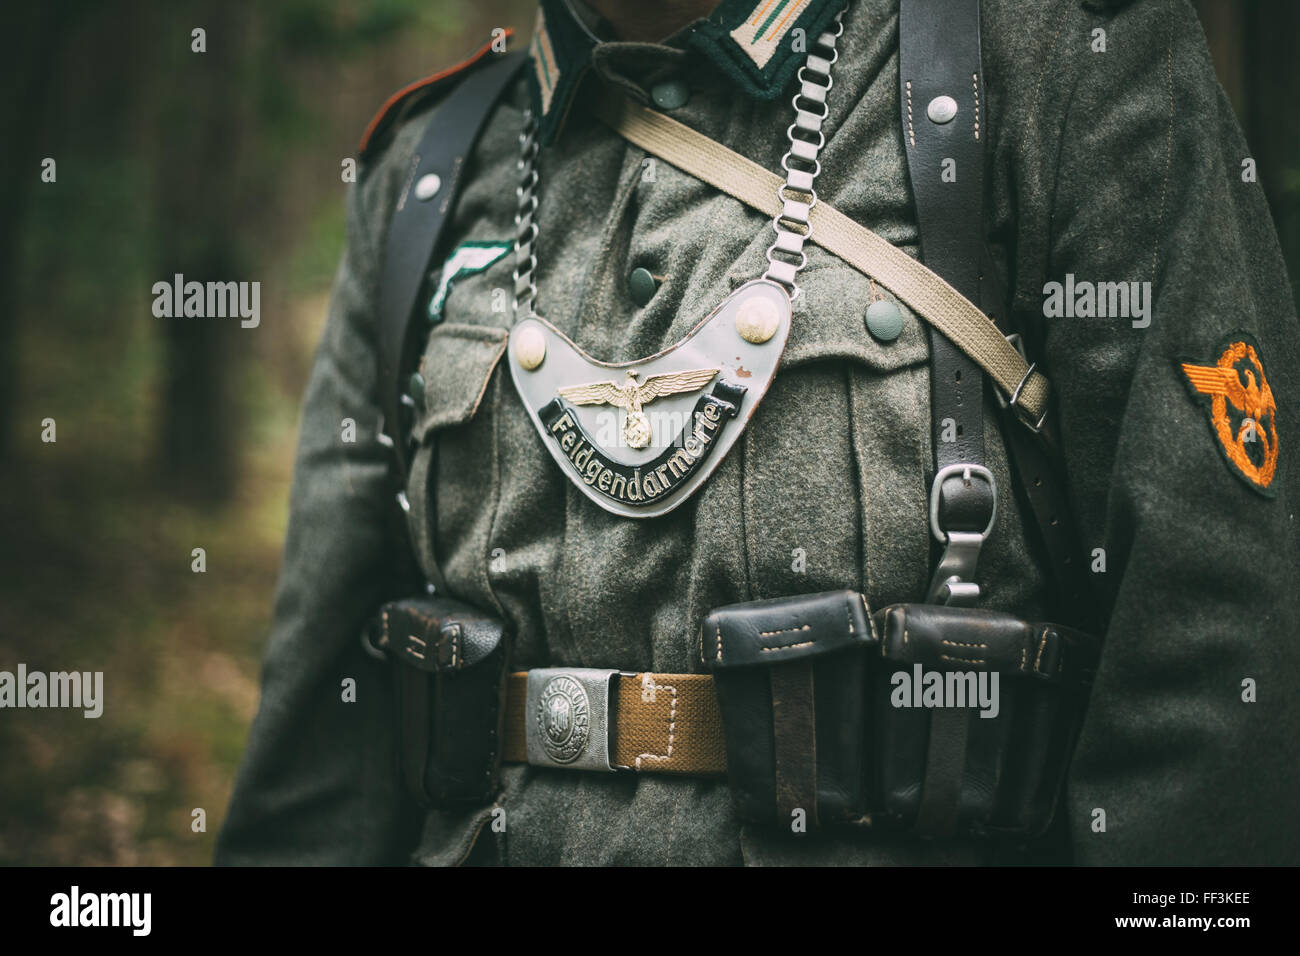 SVETLAHORSK, BELARUS - JUNE 20, 2014: Uniform of a Feldgendarm during World War II, including gorget. The inscription on gorget Stock Photo